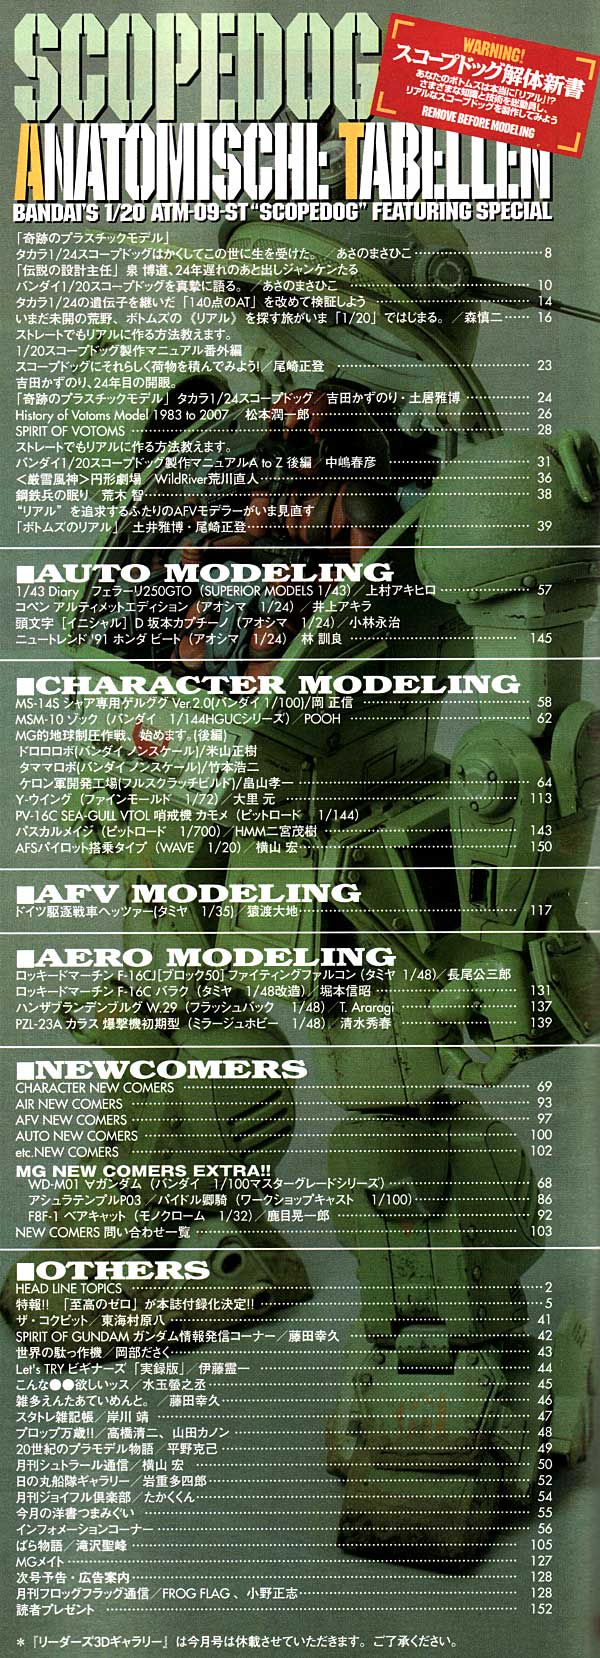 モデルグラフィックス 2007年9月号 雑誌 (大日本絵画 月刊 モデルグラフィックス No.274) 商品画像_1